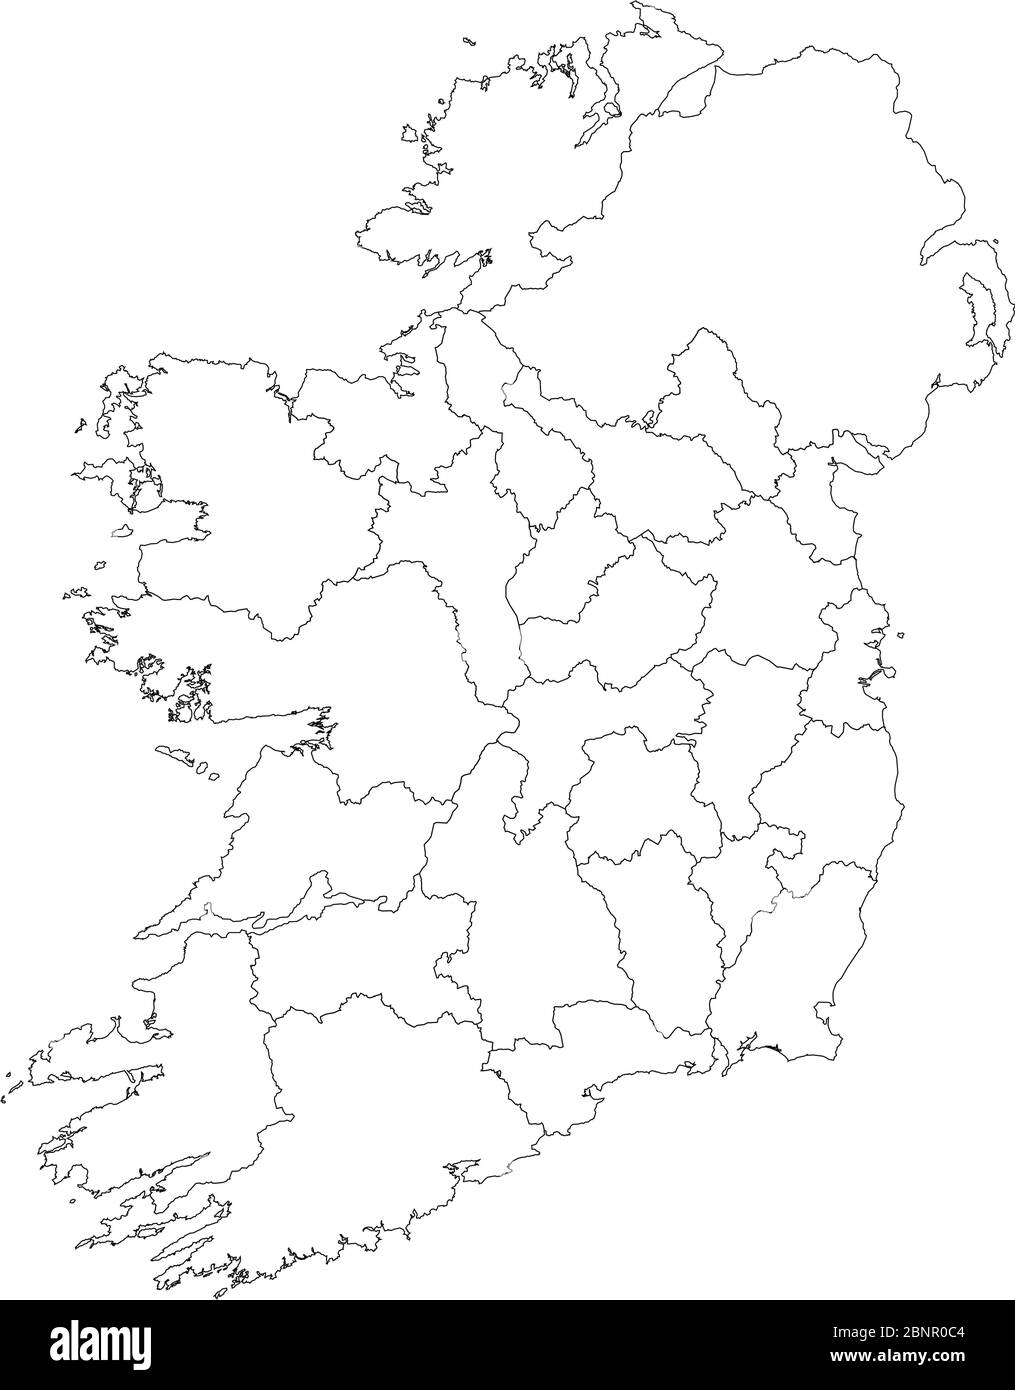 Mappe di Irlanda grafica vettoriale. Sfondo bianco. Paese europeo. Perfetto per sfondi, sfondo, concetti aziendali, grafici, etichette, bastoncini Illustrazione Vettoriale